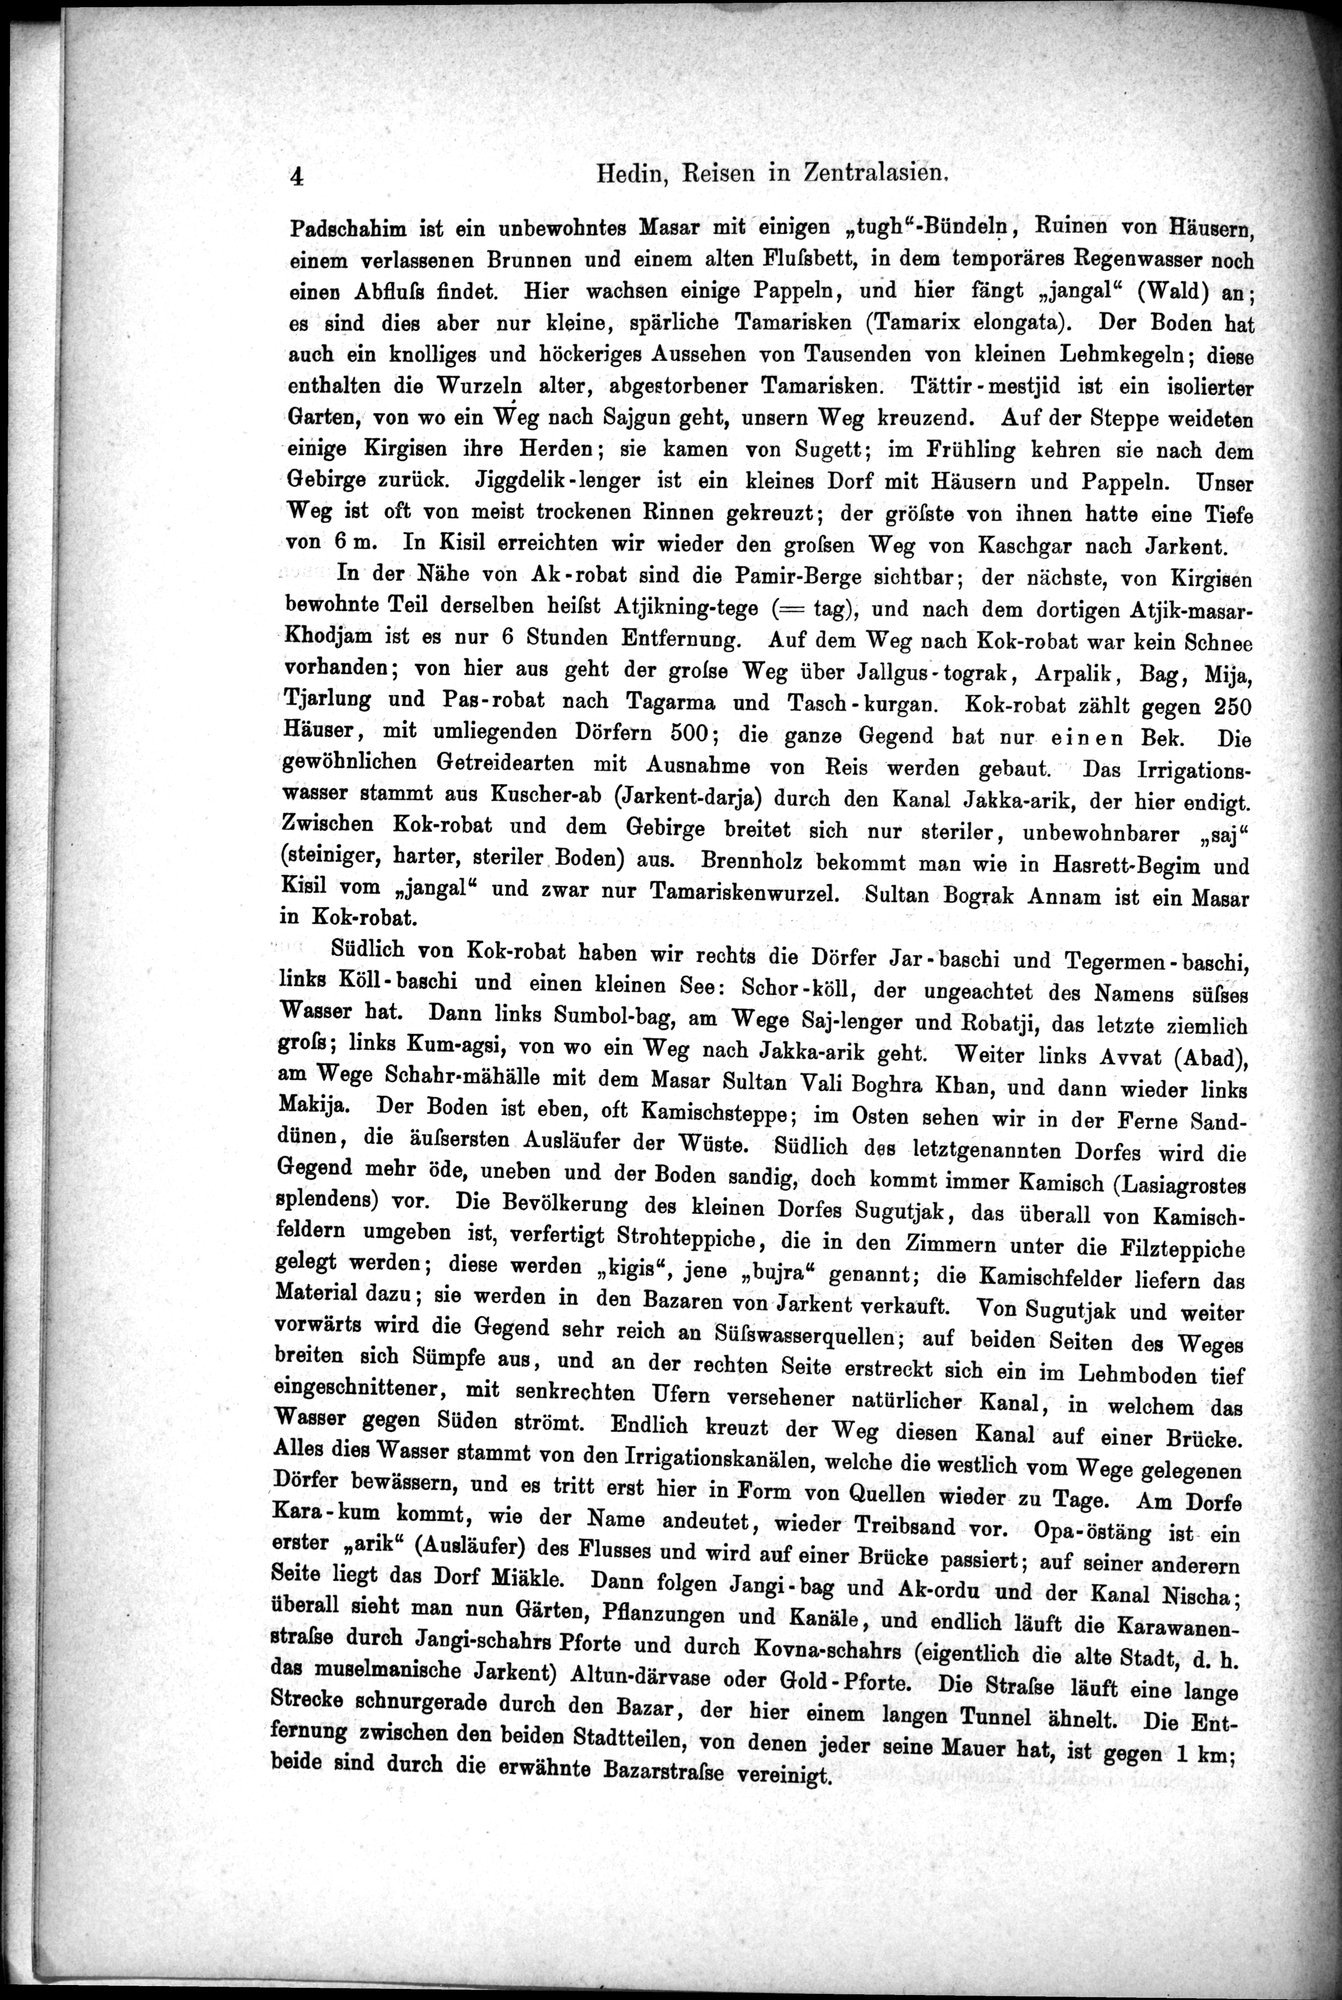 Die Geographische-Wissenschaftlichen Ergebnisse meiner Reisen in Zentralasien, 1894-1897 : vol.1 / Page 16 (Grayscale High Resolution Image)